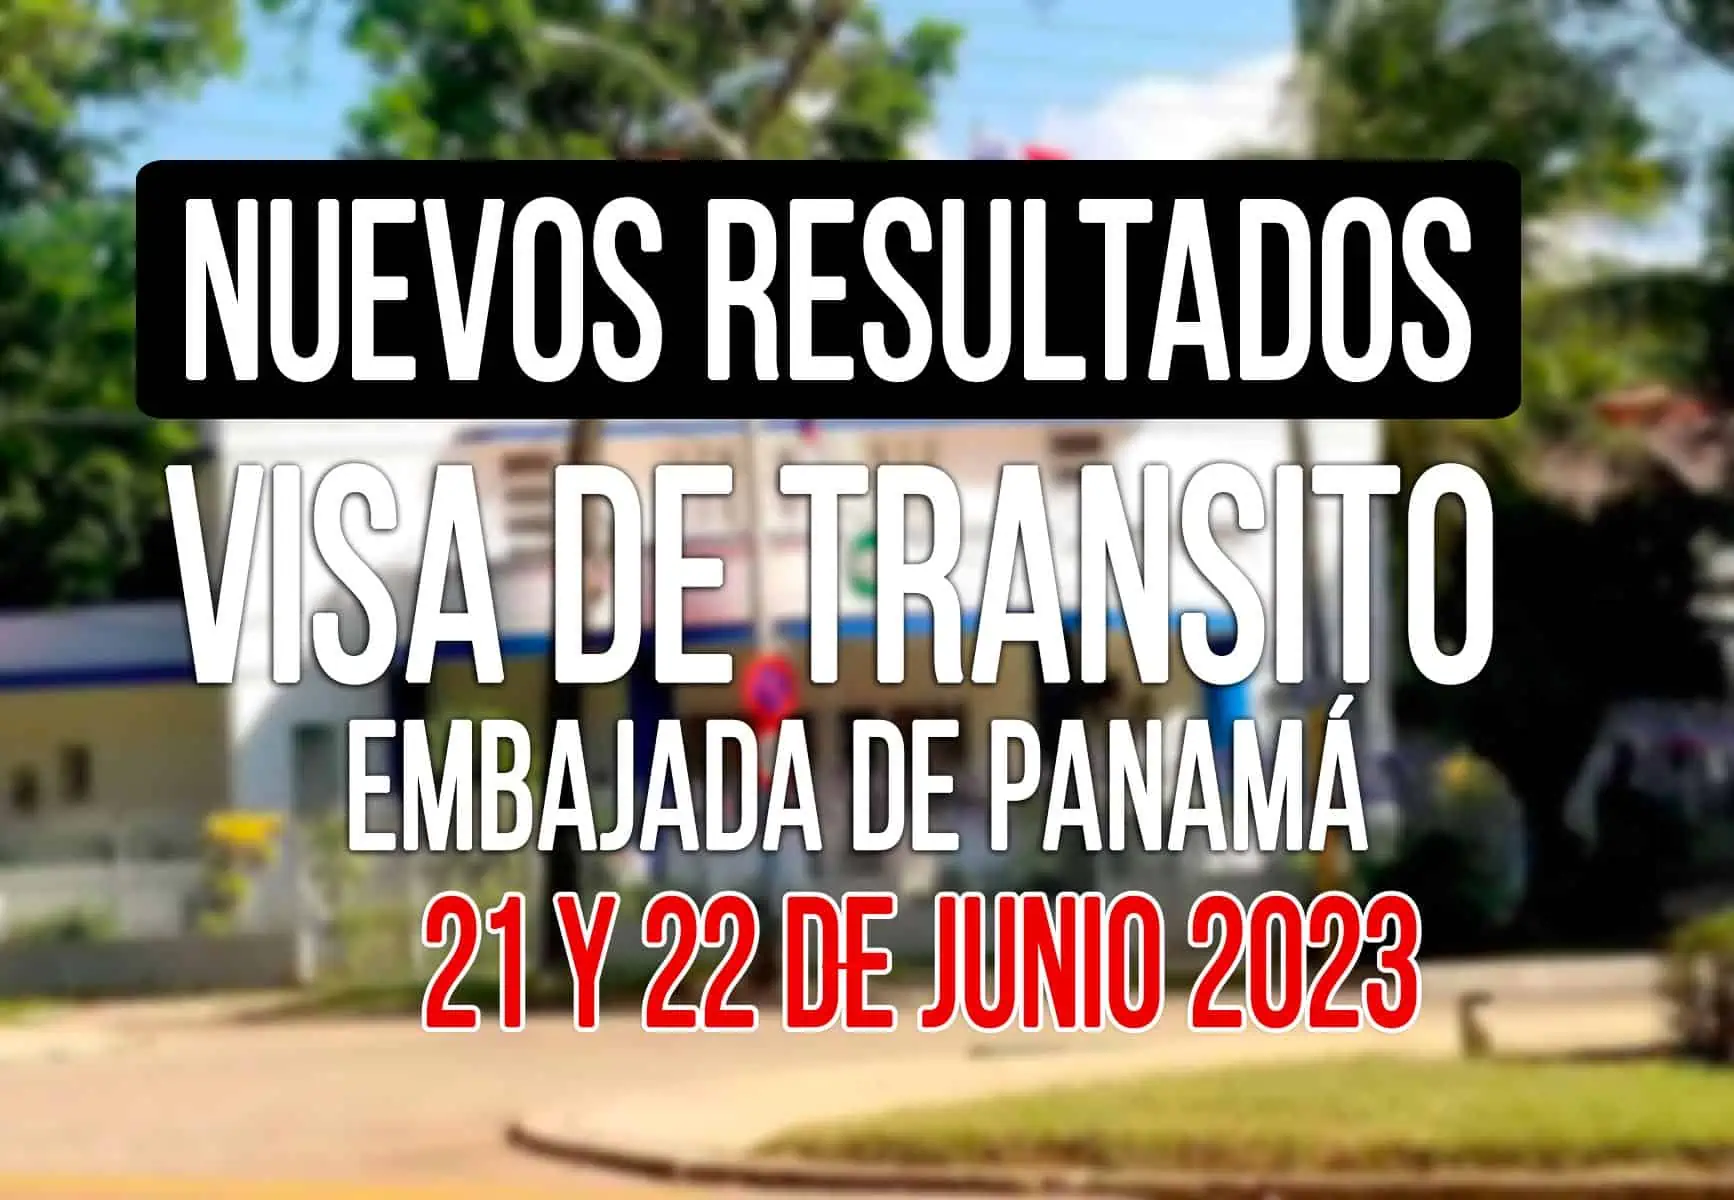 Resultados de solicitud de visa de transito a panamá 21 y 22 de Junio 2023